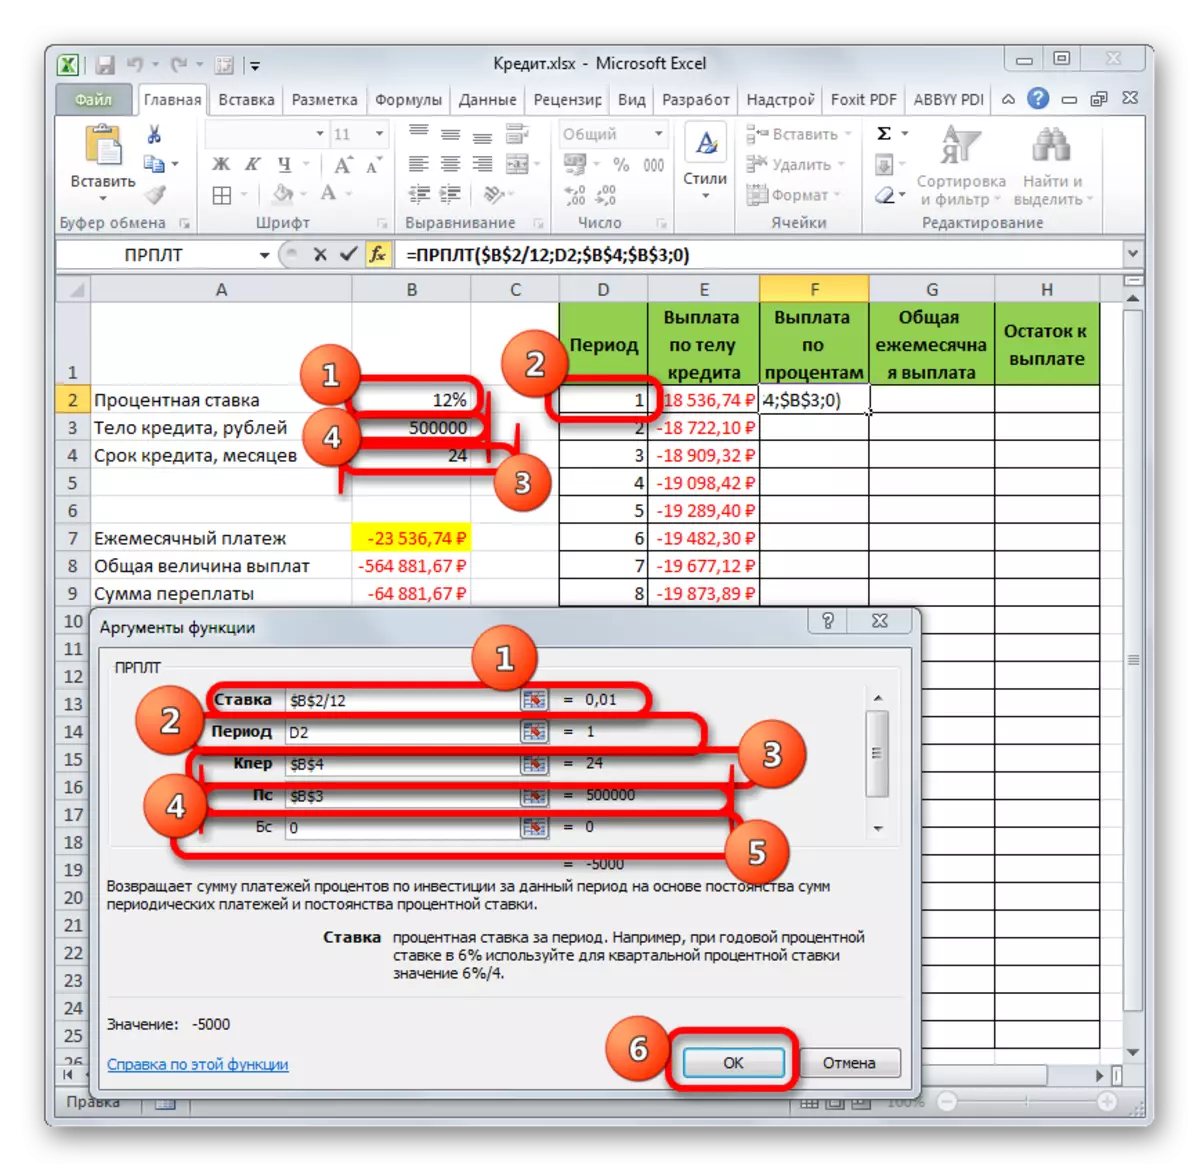 Акно аргументаў функцыі ПРПЛТ ў Microsoft Excel